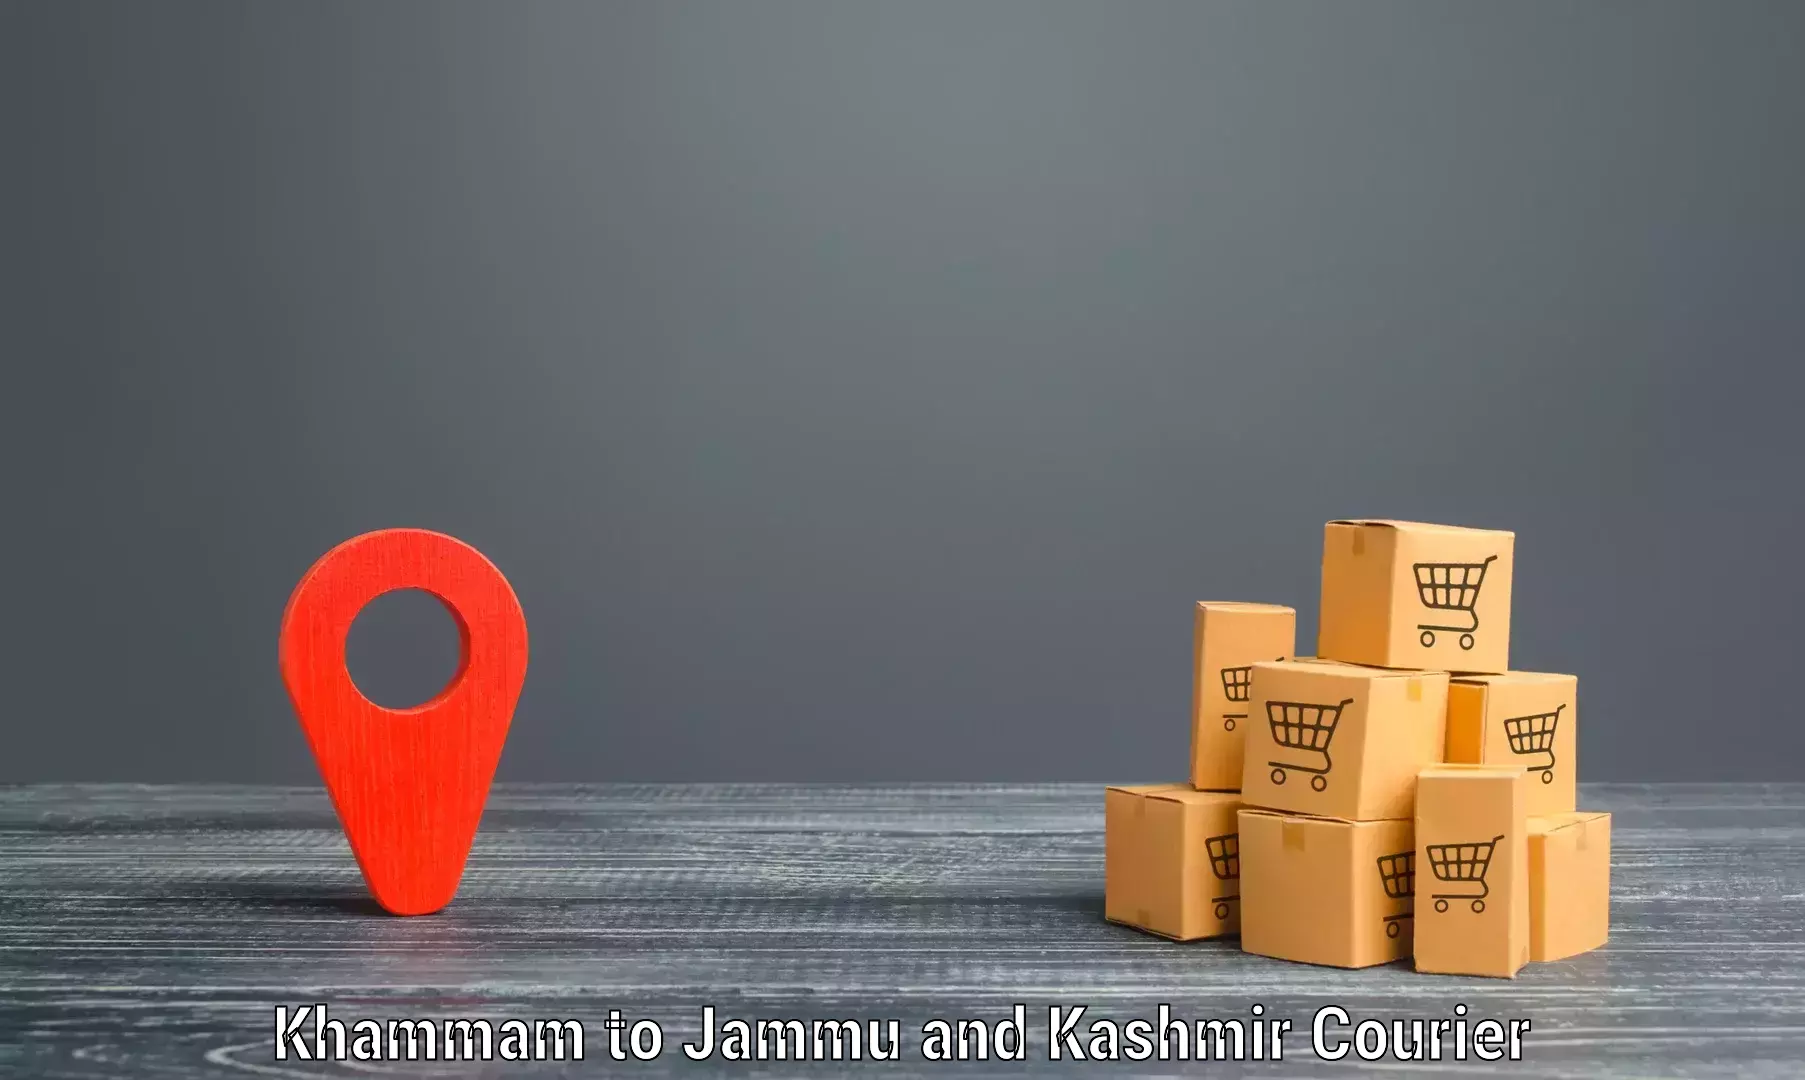 Modern courier technology Khammam to Kulgam